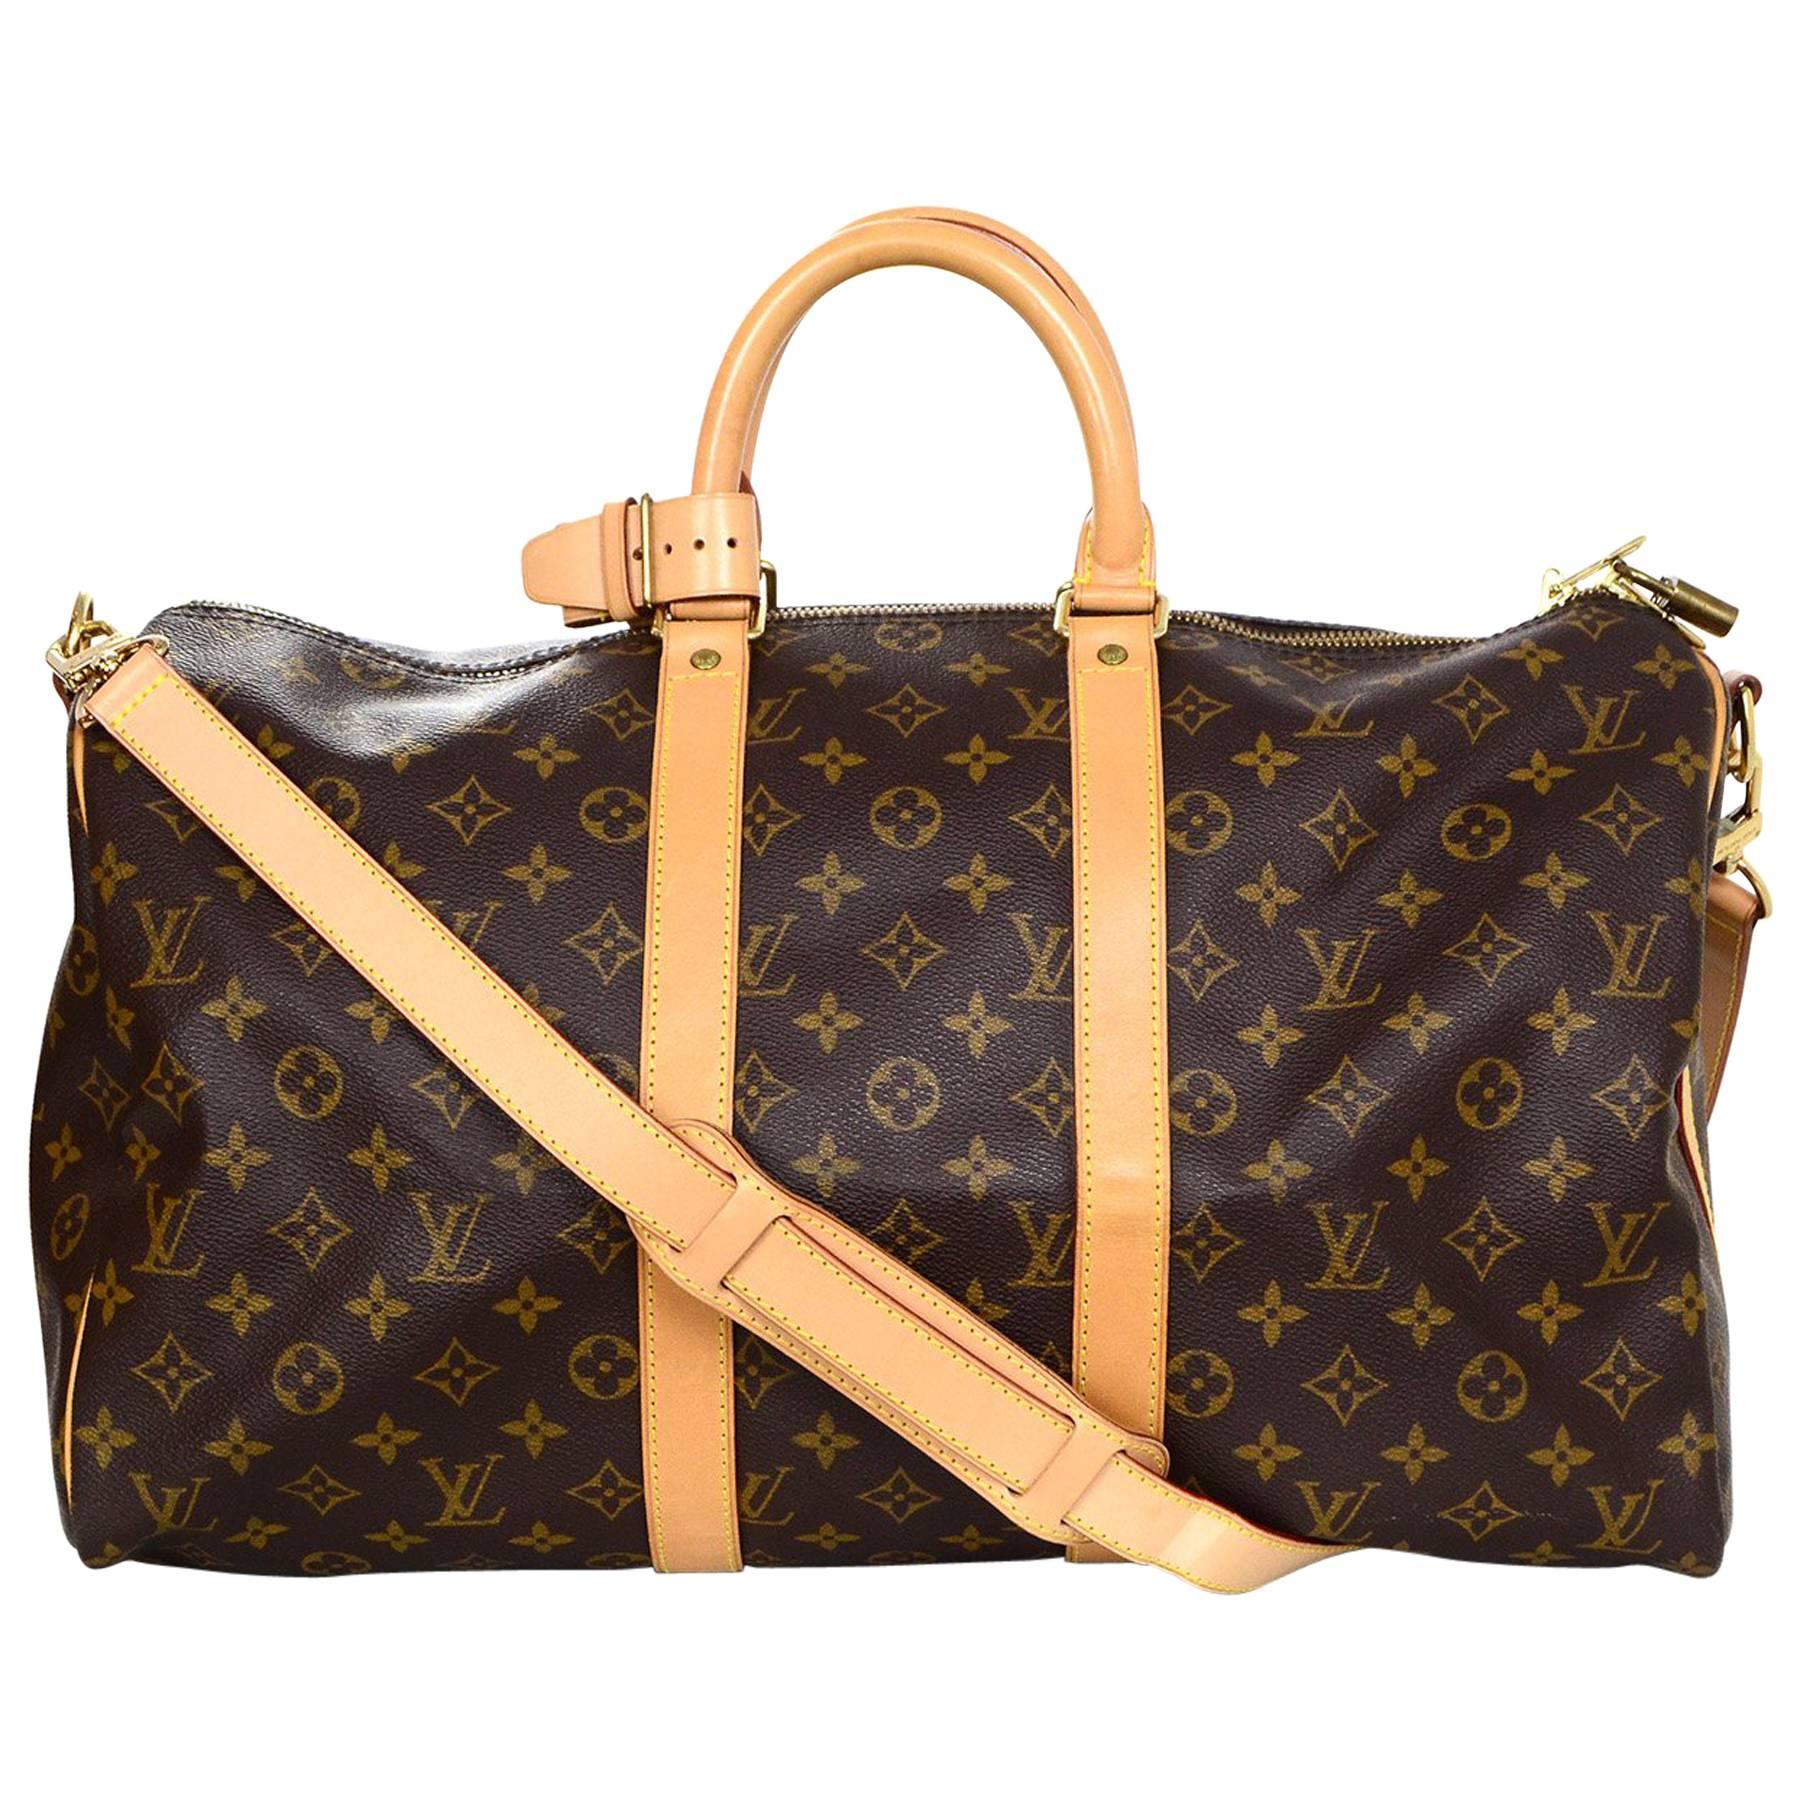 Louis Vuitton Monogram Keepall 45 Duffle Weekender Bag